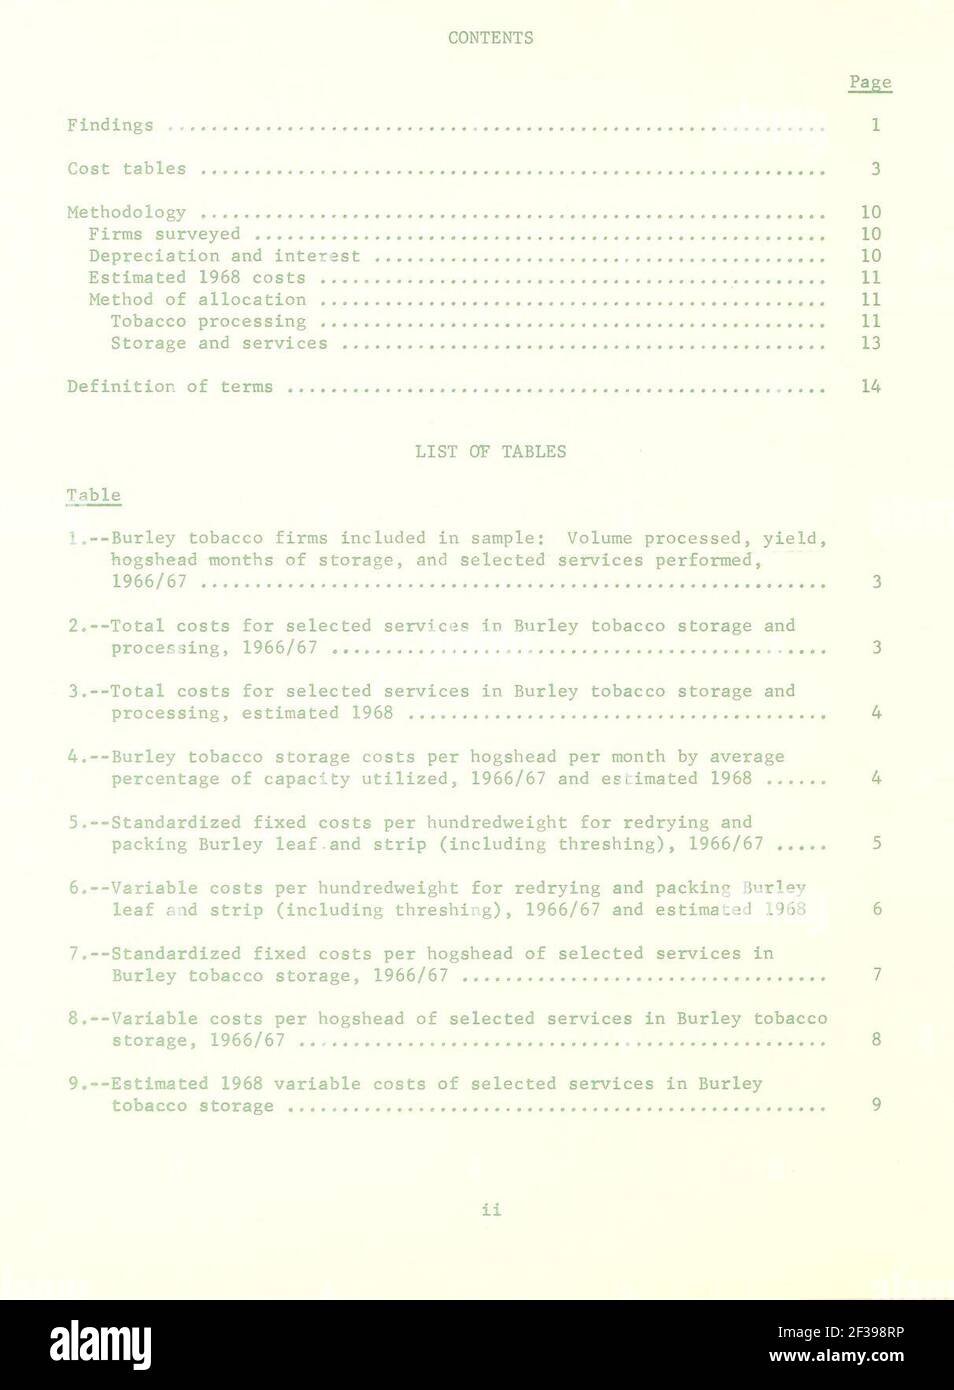 Elaborazione, memorizzazione e selezionato il servizio dello storage per i costi del tabacco Burley in strutture commerciali, 1966-67 e stimati 1968 Foto Stock